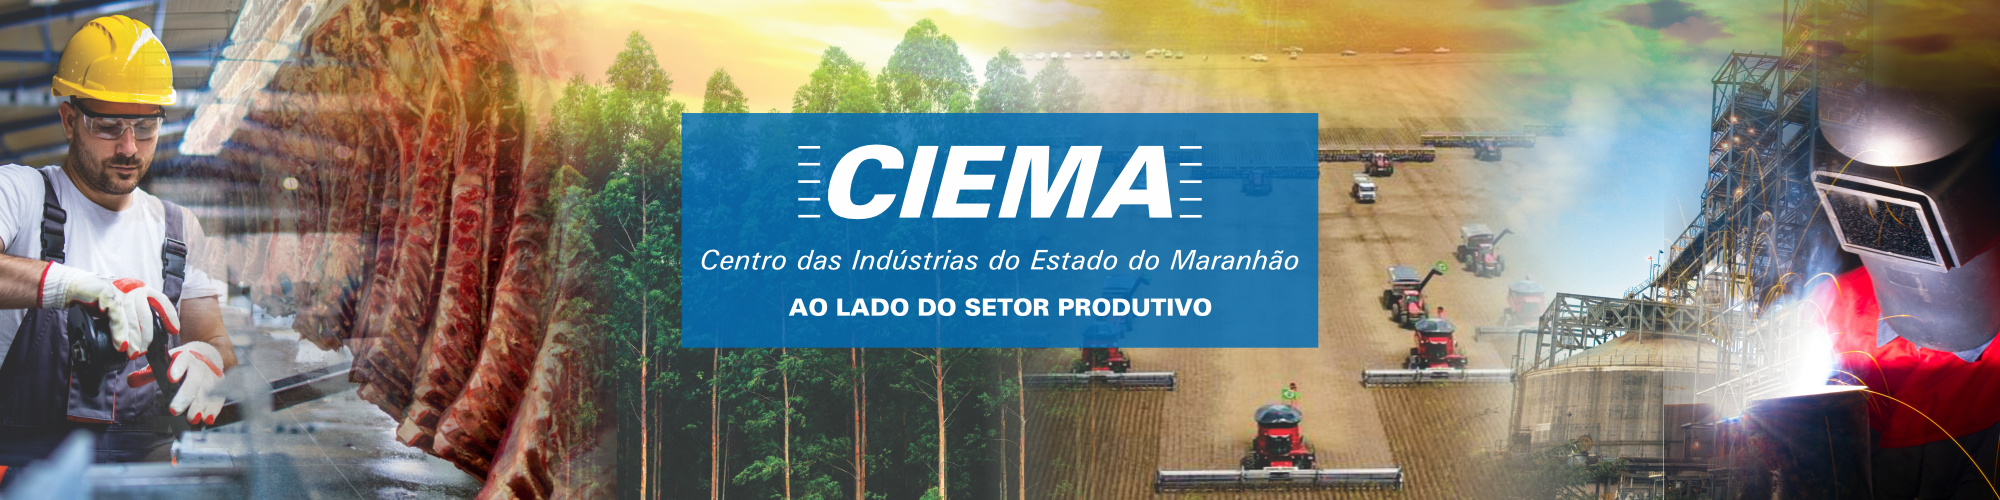 CIEMA - Centro das Indústrias do Maranhão